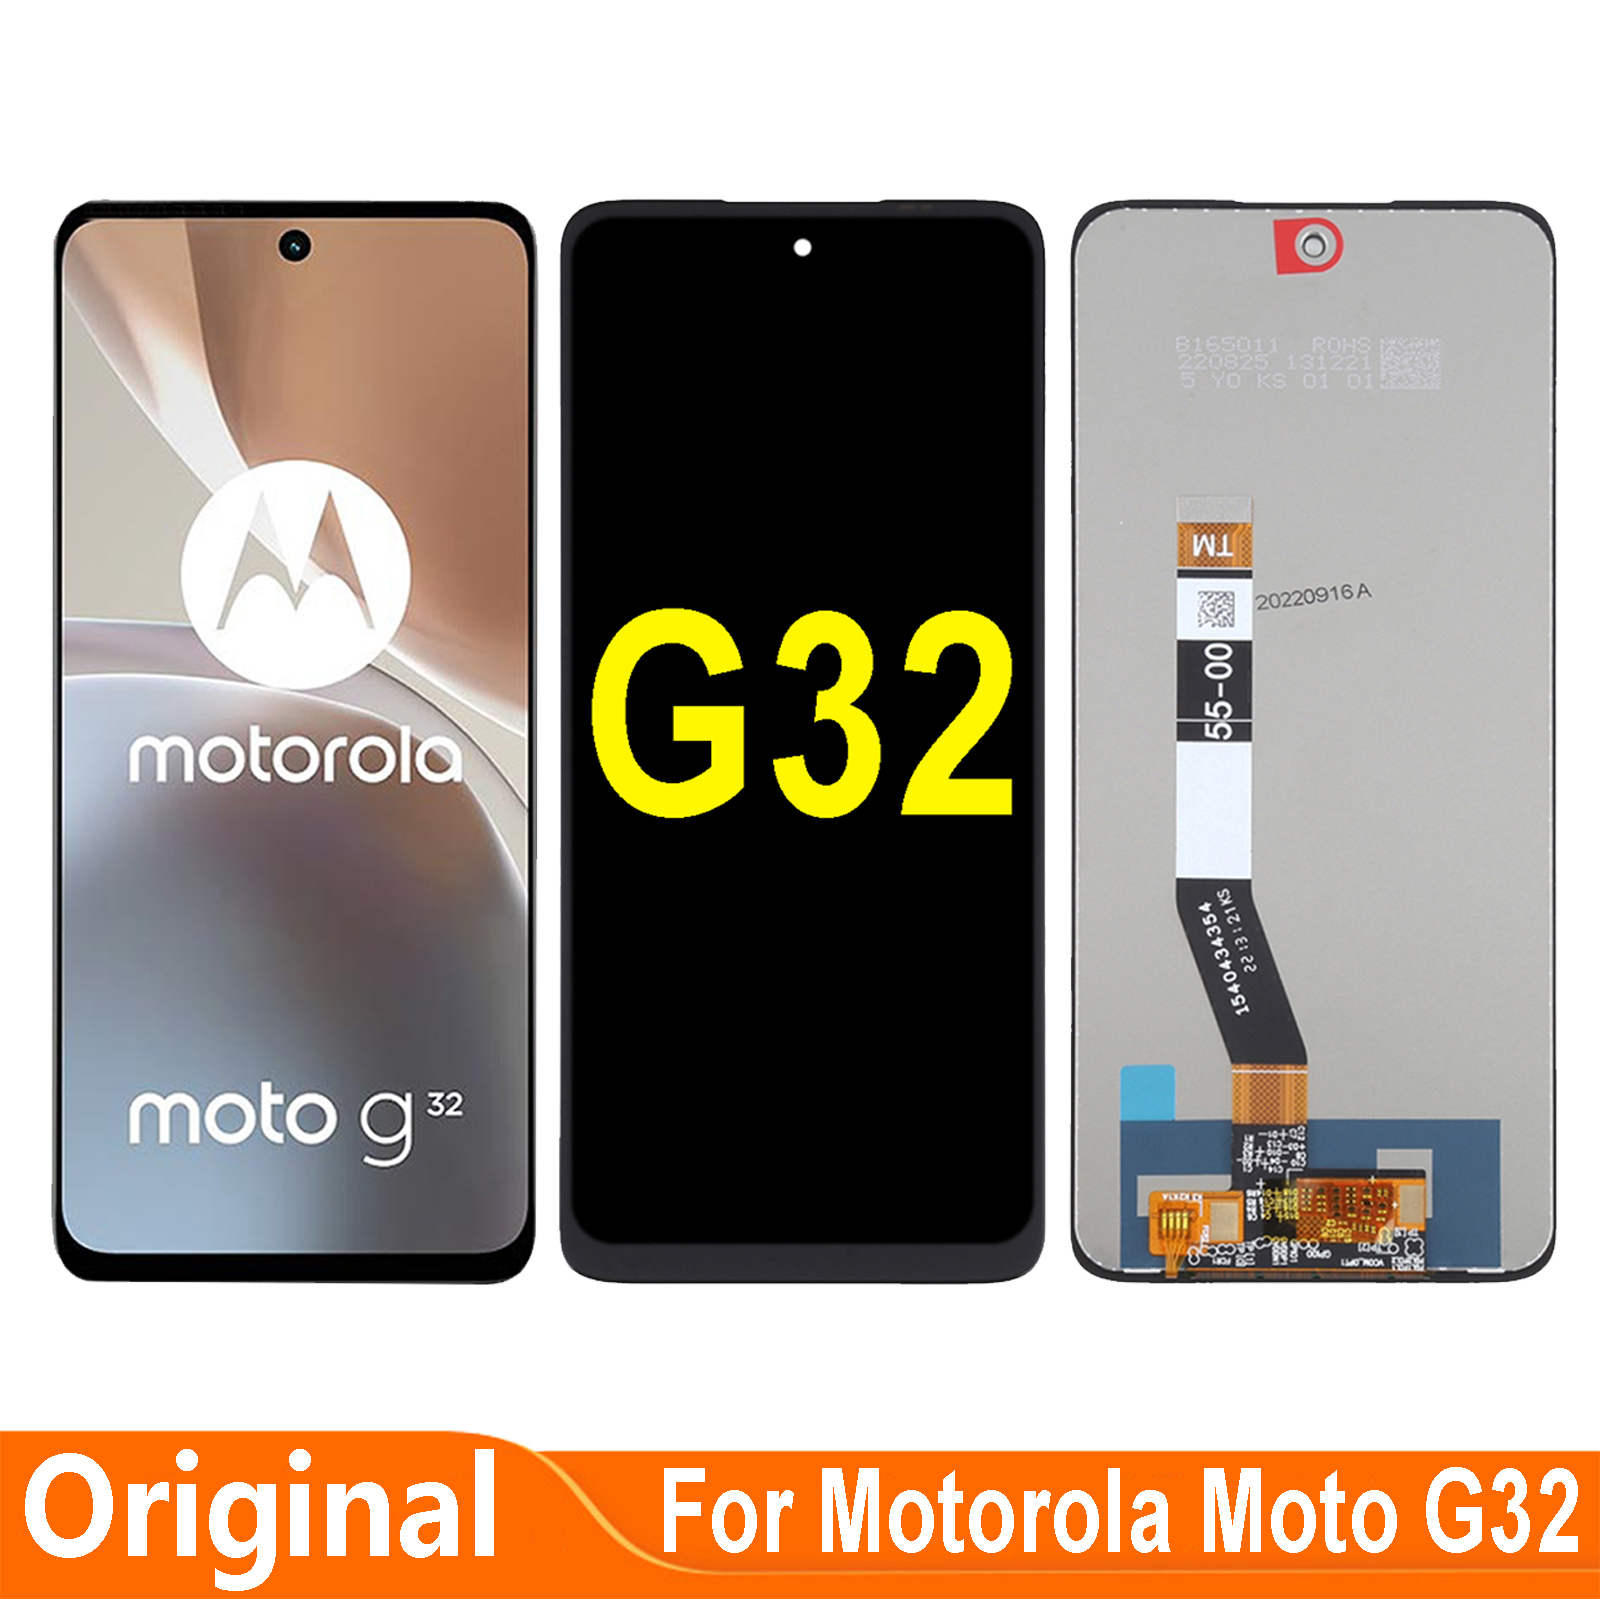 Original-6-5-For-Motorola-Moto-G32-MotoG32-LCD-Display-Touch-Screen-Digitizer-Assembly-Repair-Parts